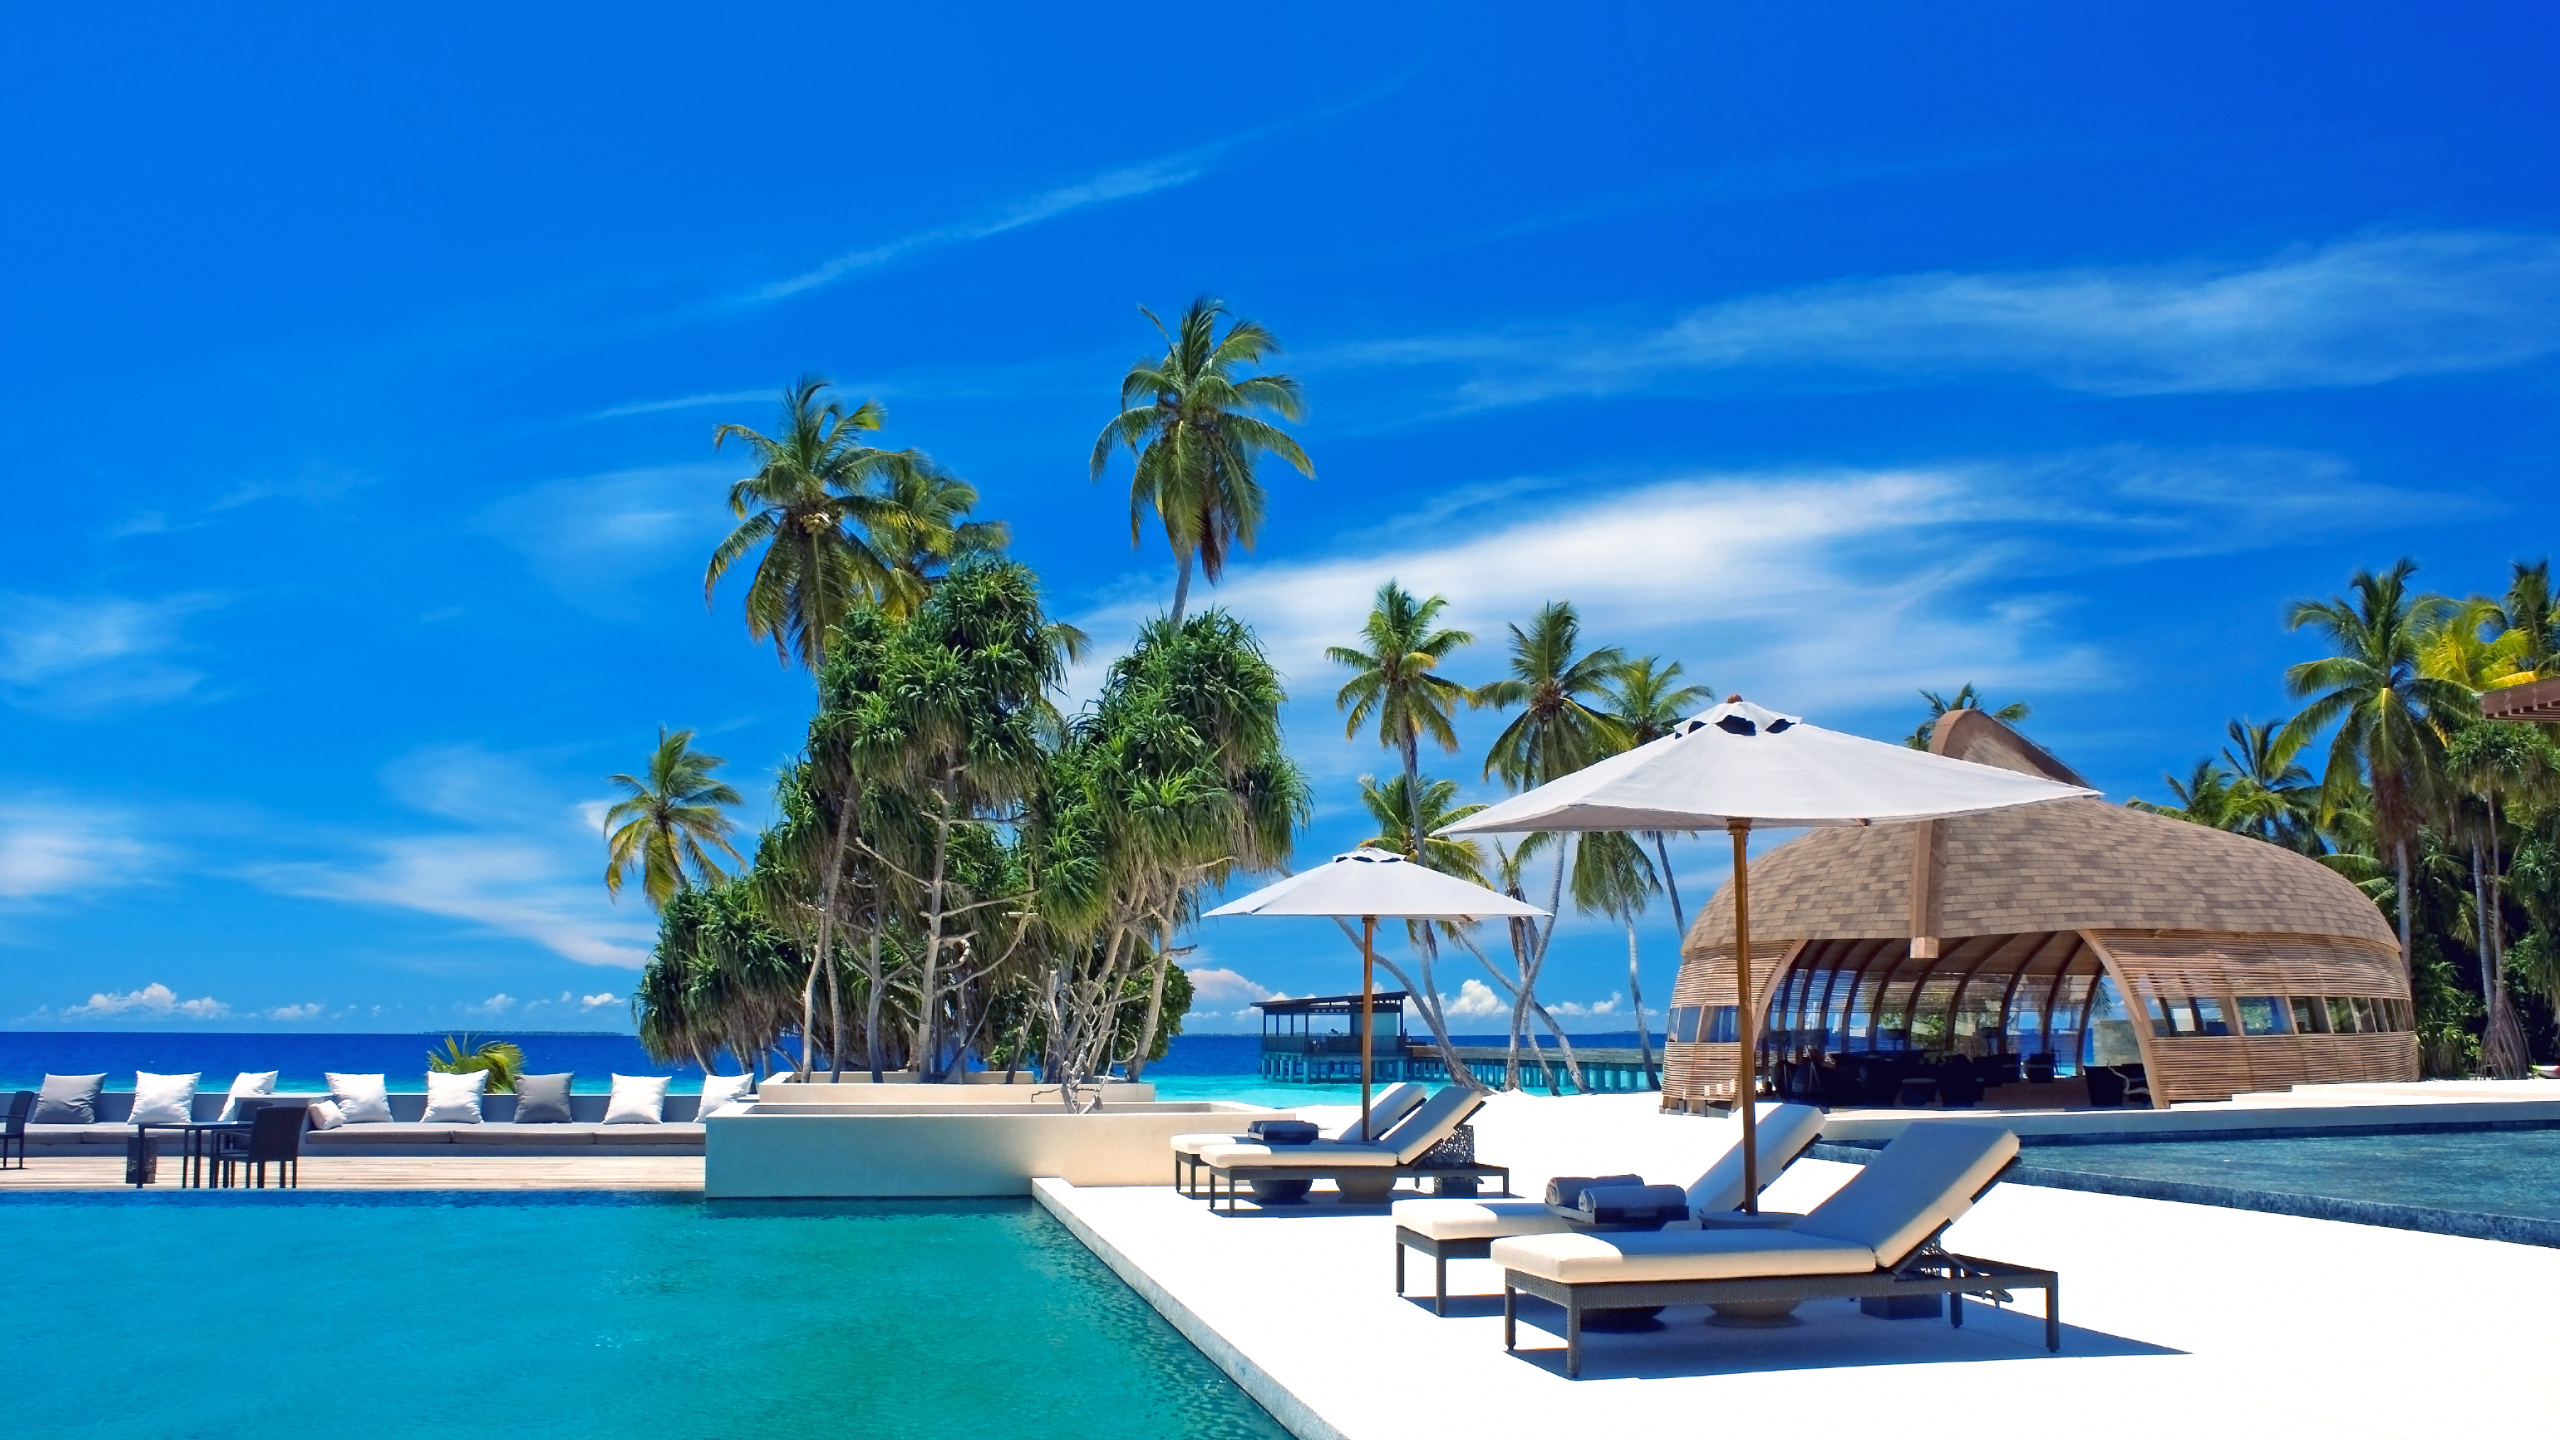 Обои Парк Hyatt Hadahaa Мальдивы, путешествие, прибежище, Алила отели и курорты, свойство в разрешении 2560x1440